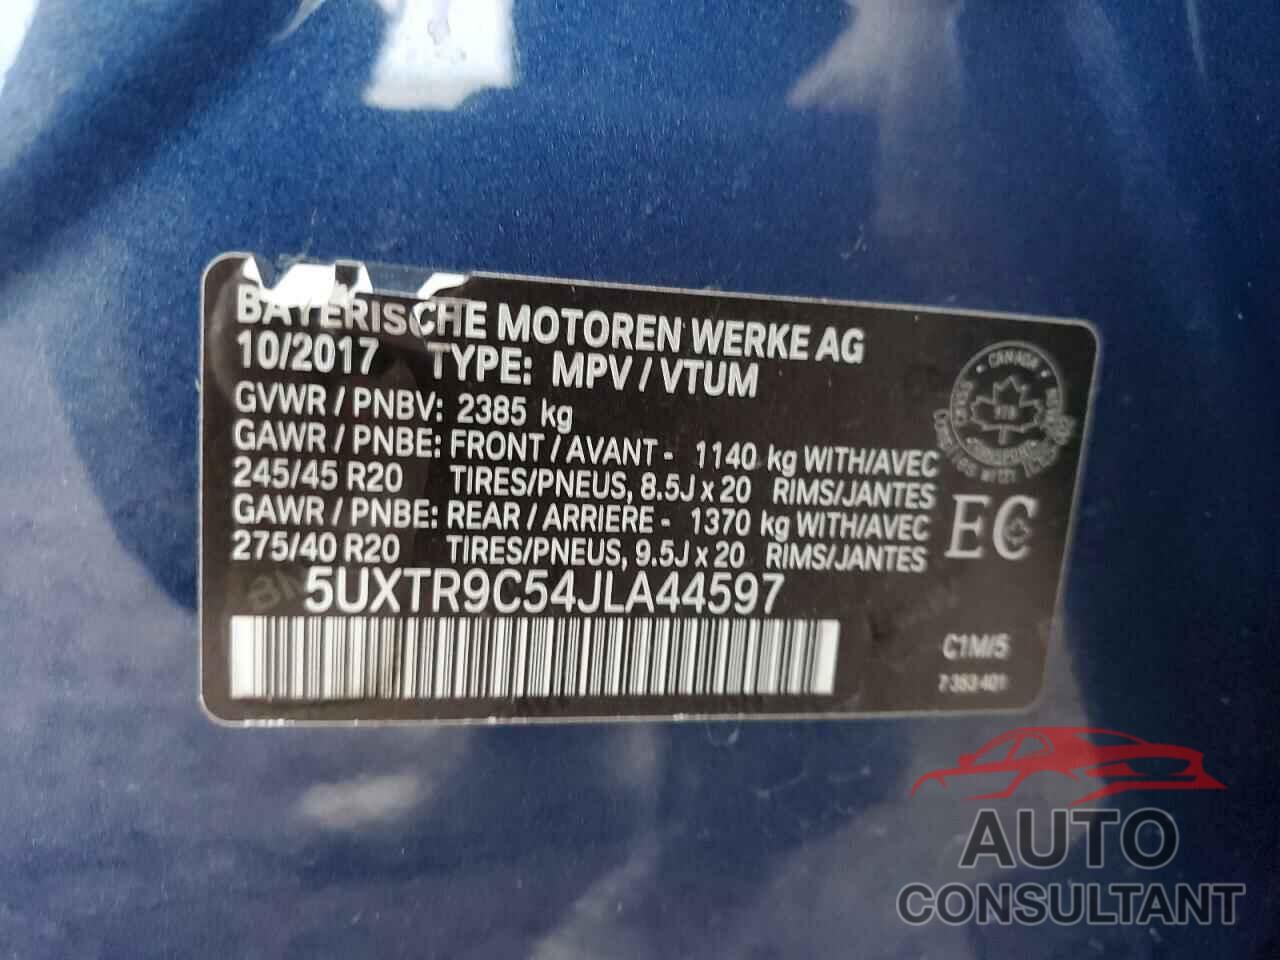 BMW X3 2018 - 5UXTR9C54JLA44597